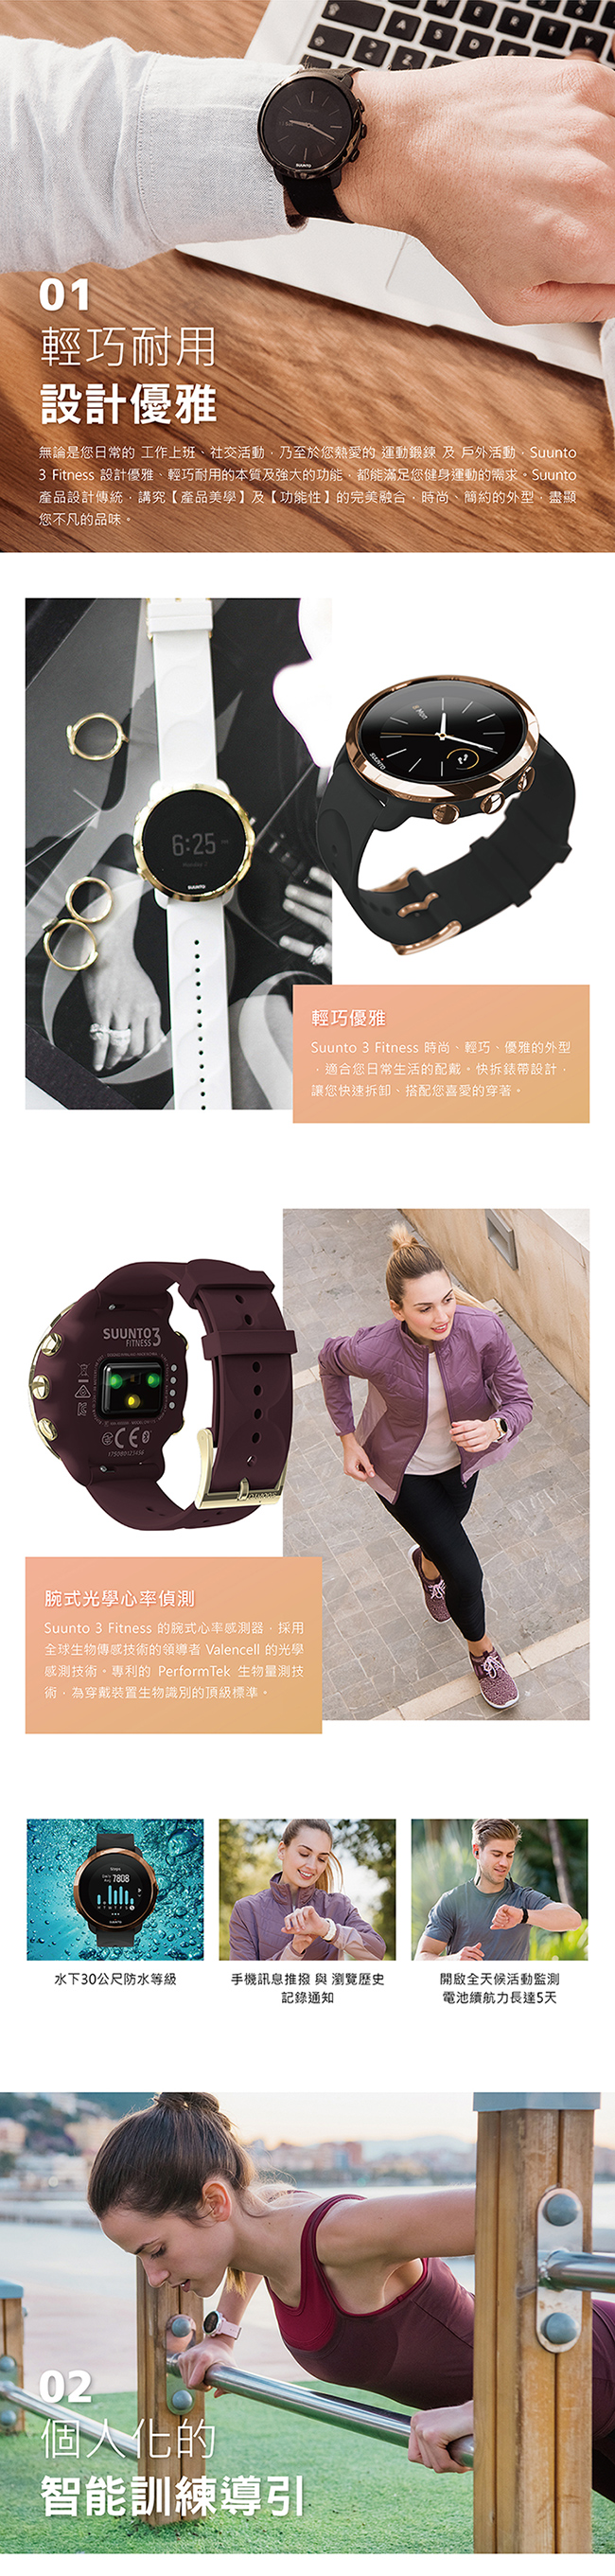 SUUNTO 3 Fitness 保持健康與活力生活的體適能運動腕錶 (典雅復古銅)